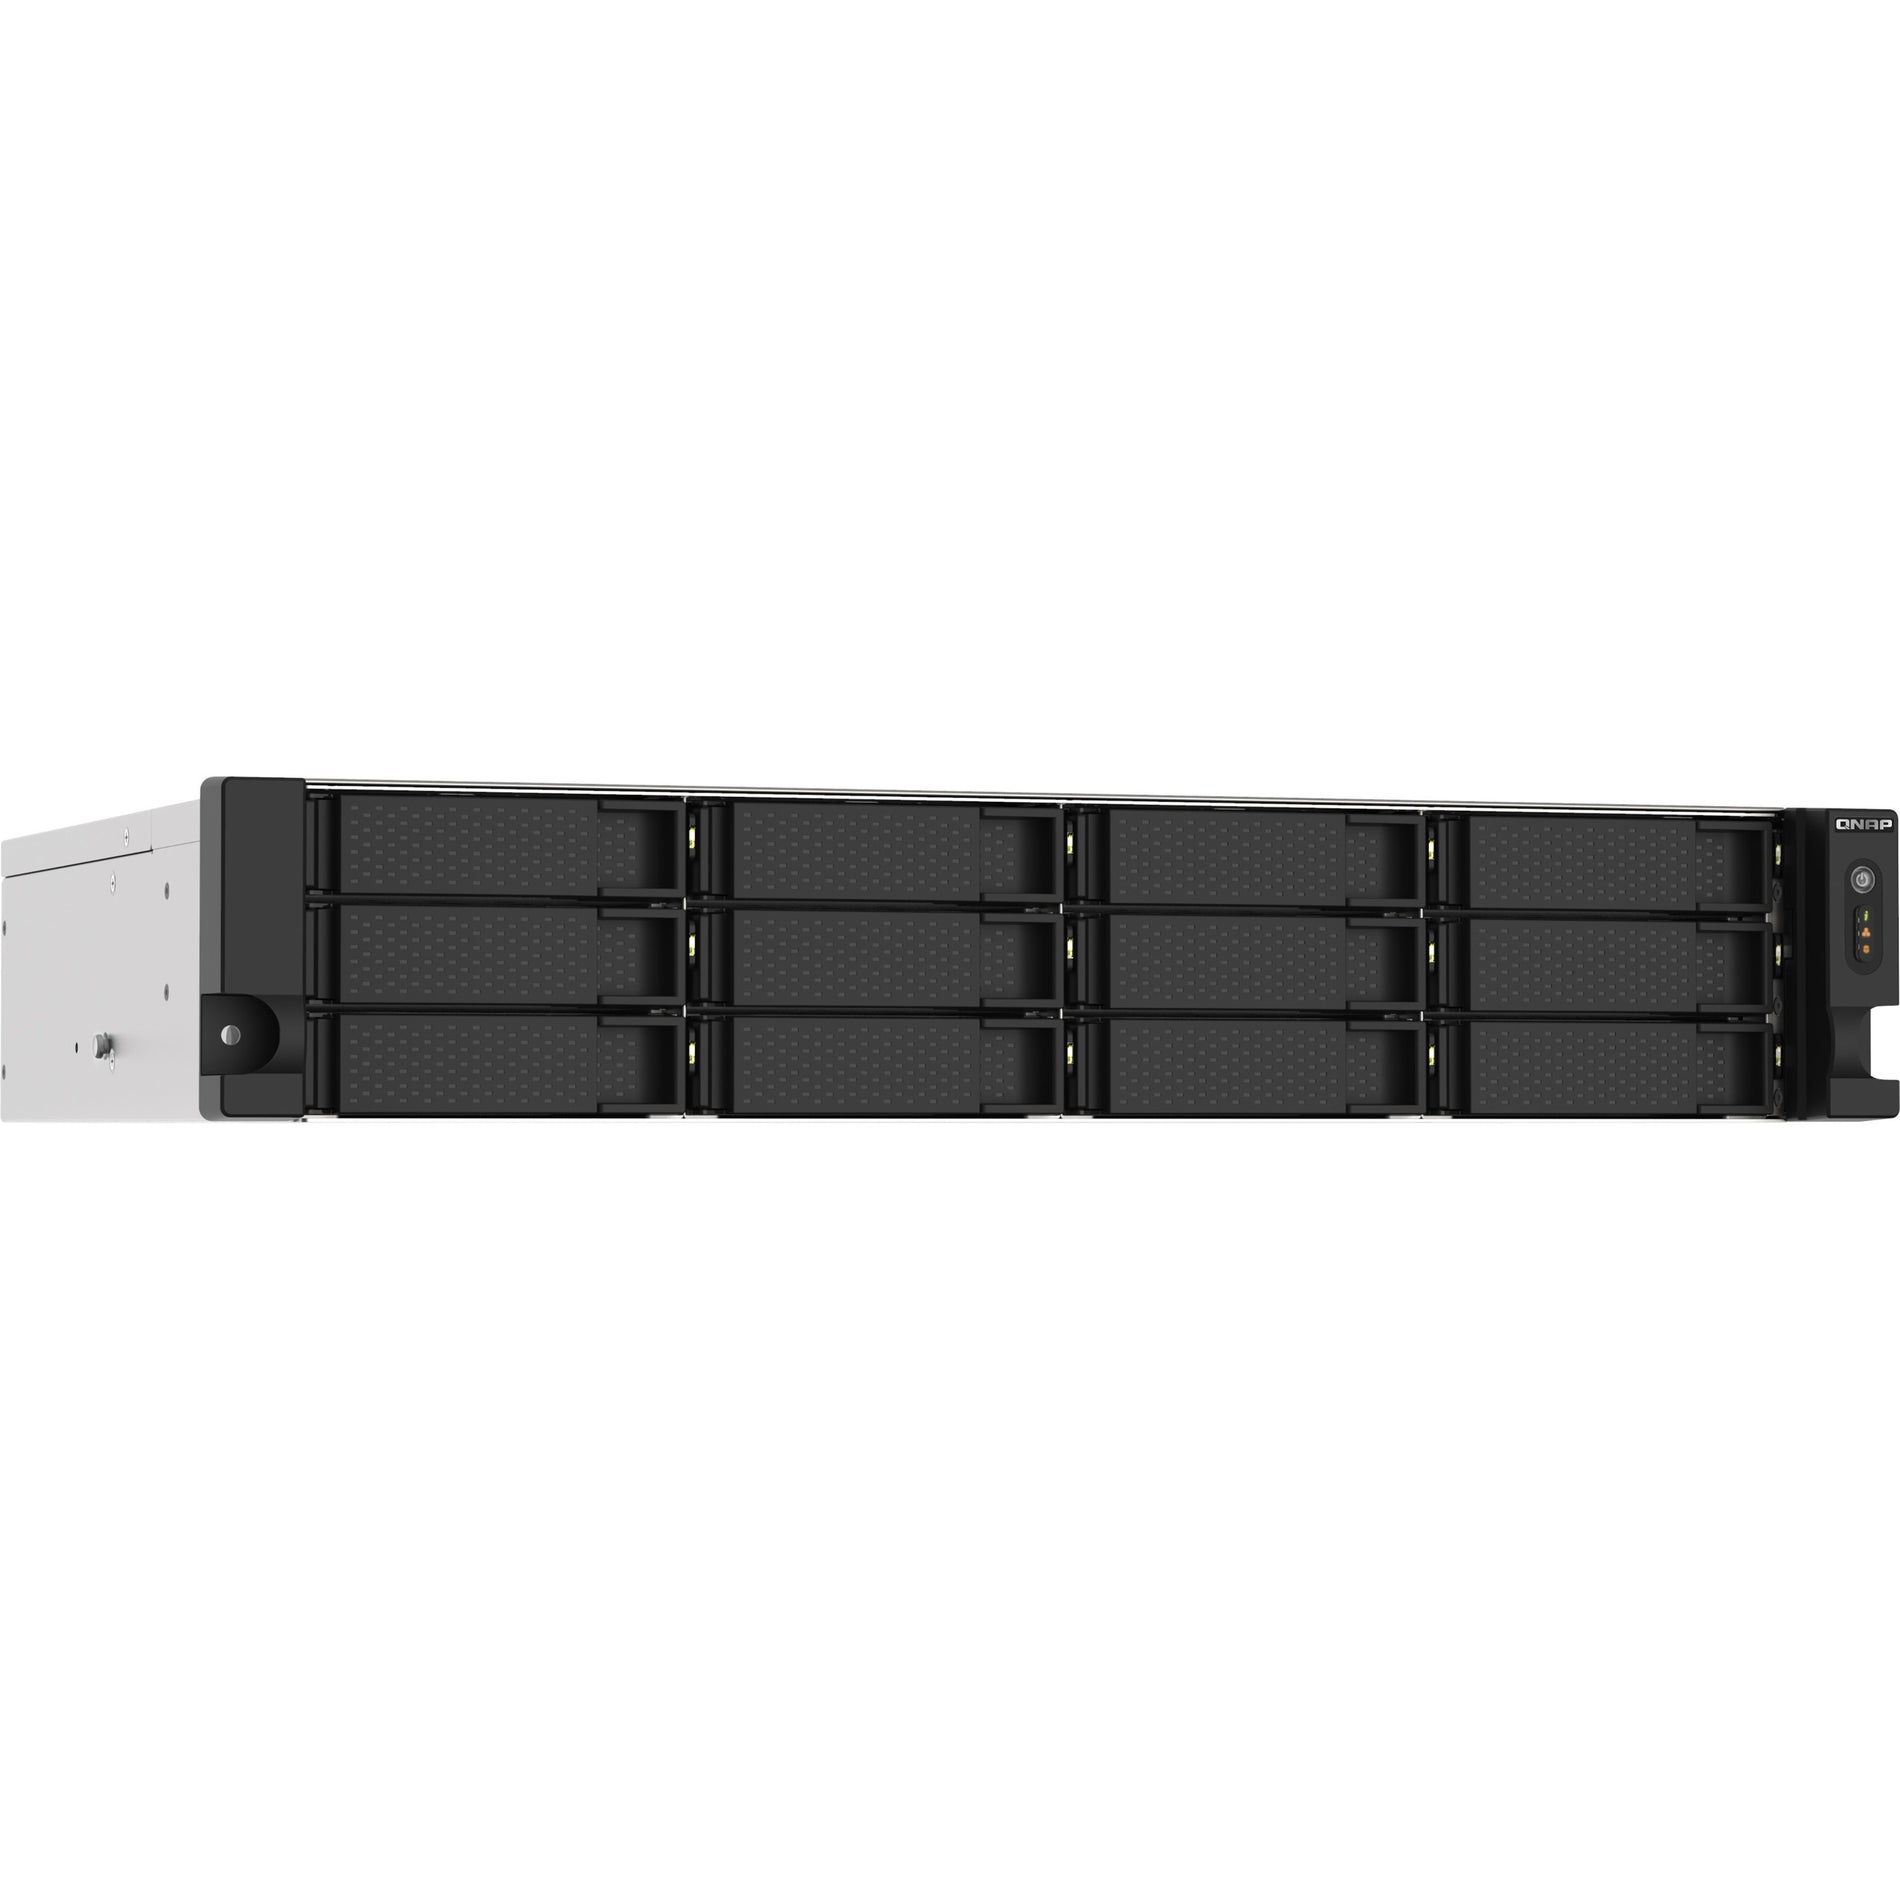 QNAP TS-1273AU-RP-8G-US TS-1273AU-RP-8G SAN/NAS Storage System, 8GB DDR4, QTS 4.4.2, 2 Year Warranty